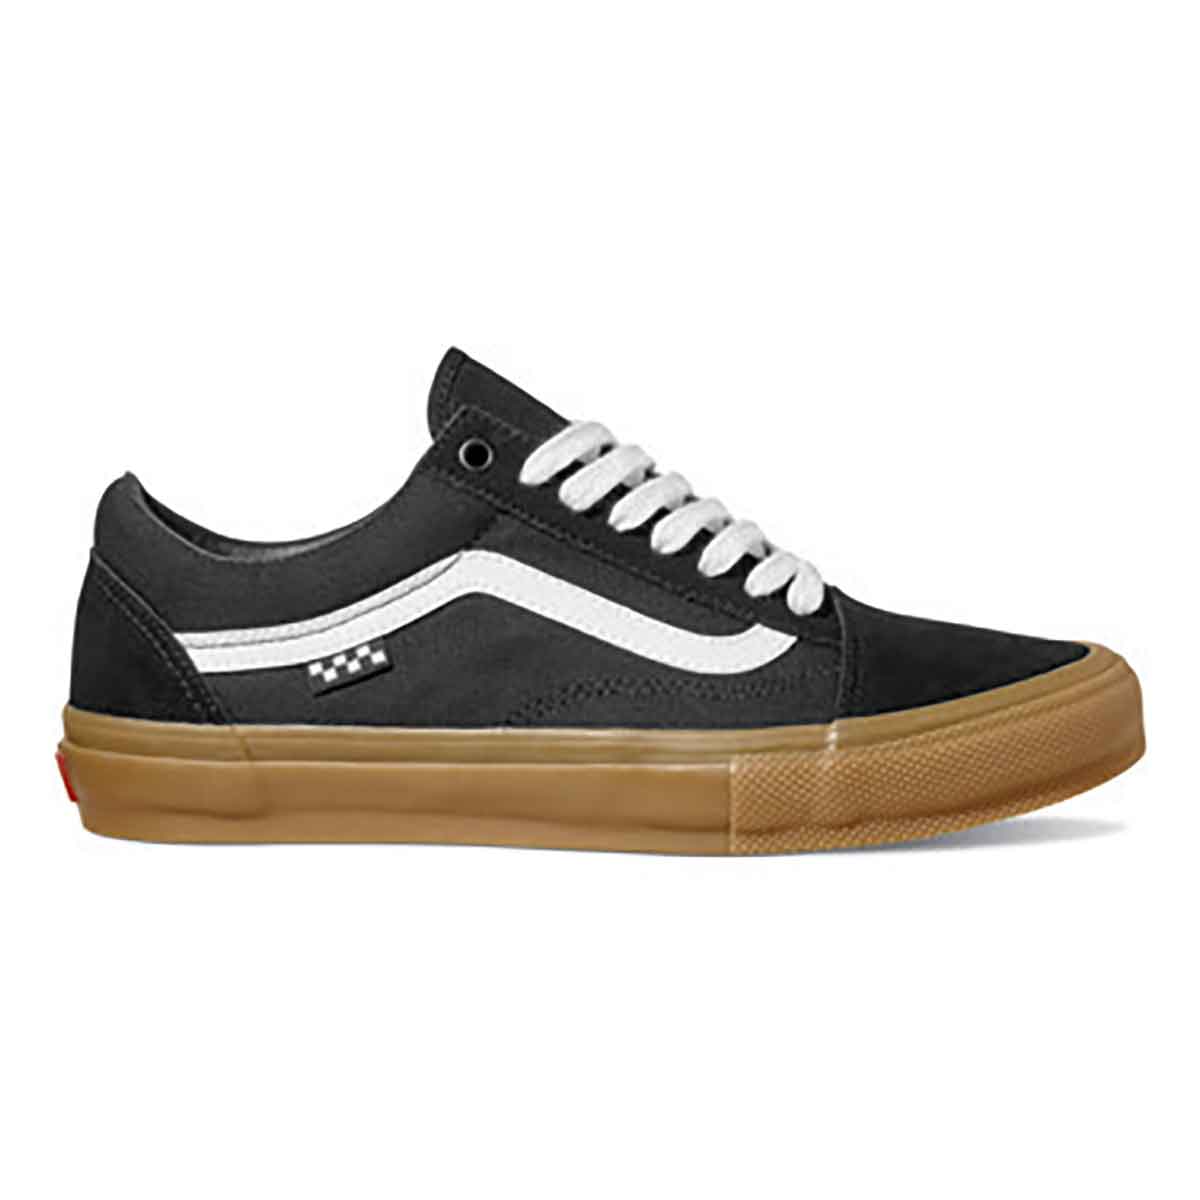 Vans Skate Old Skool Pro Shoes - Black/Gum | SoCal Skateshop